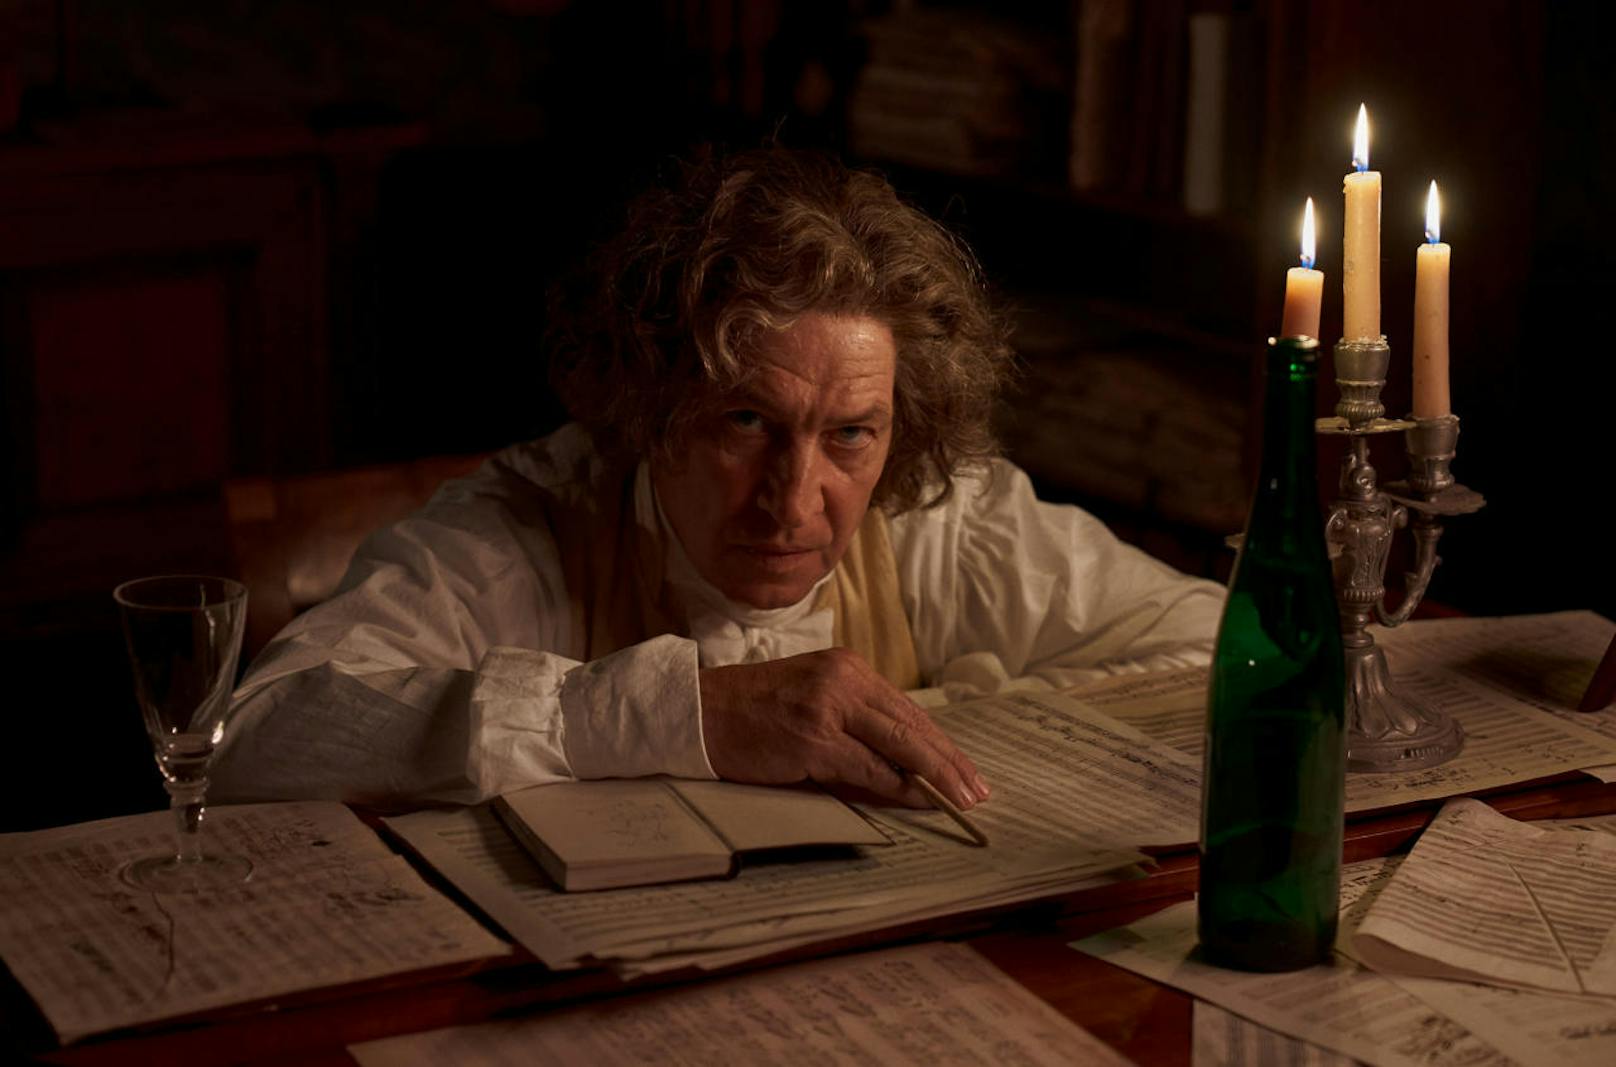 Tobias Moretti spielt im ORF-Historienfilm "Louis van Beethoven" den berühmten tauben Komponisten Ludwig van Beethoven mit seiner berühmten Wallemähne. Der Film läuft zur Feier des Beethoven-Jahres 2020 zum 250. Geburtstag in ORF 2.